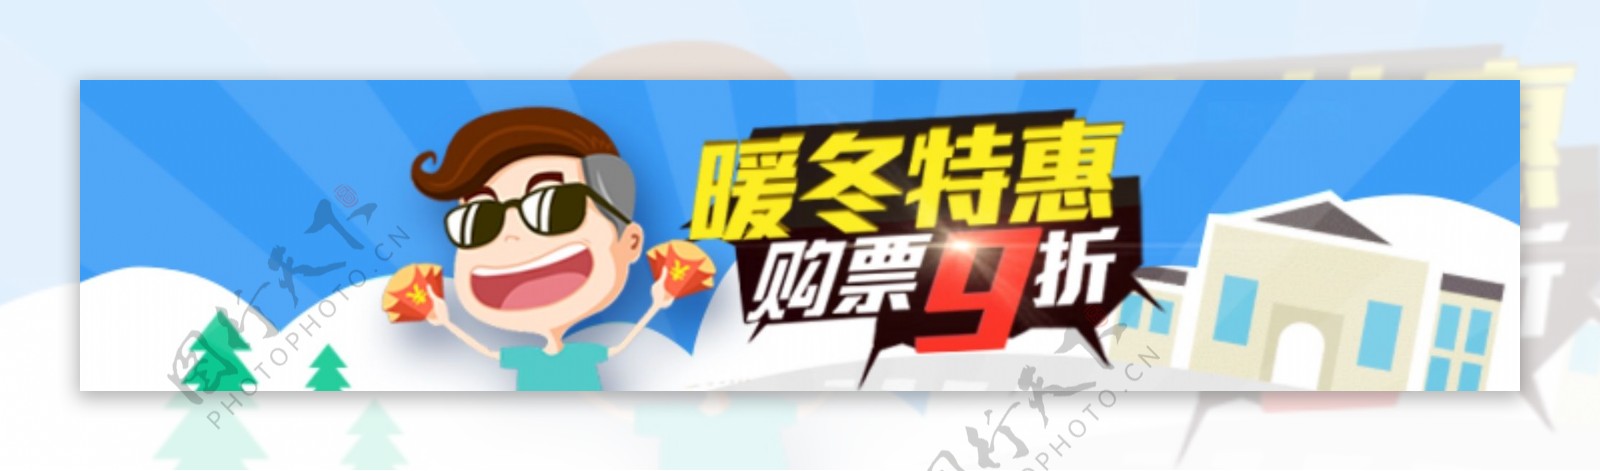 扁平化banner广告图素材